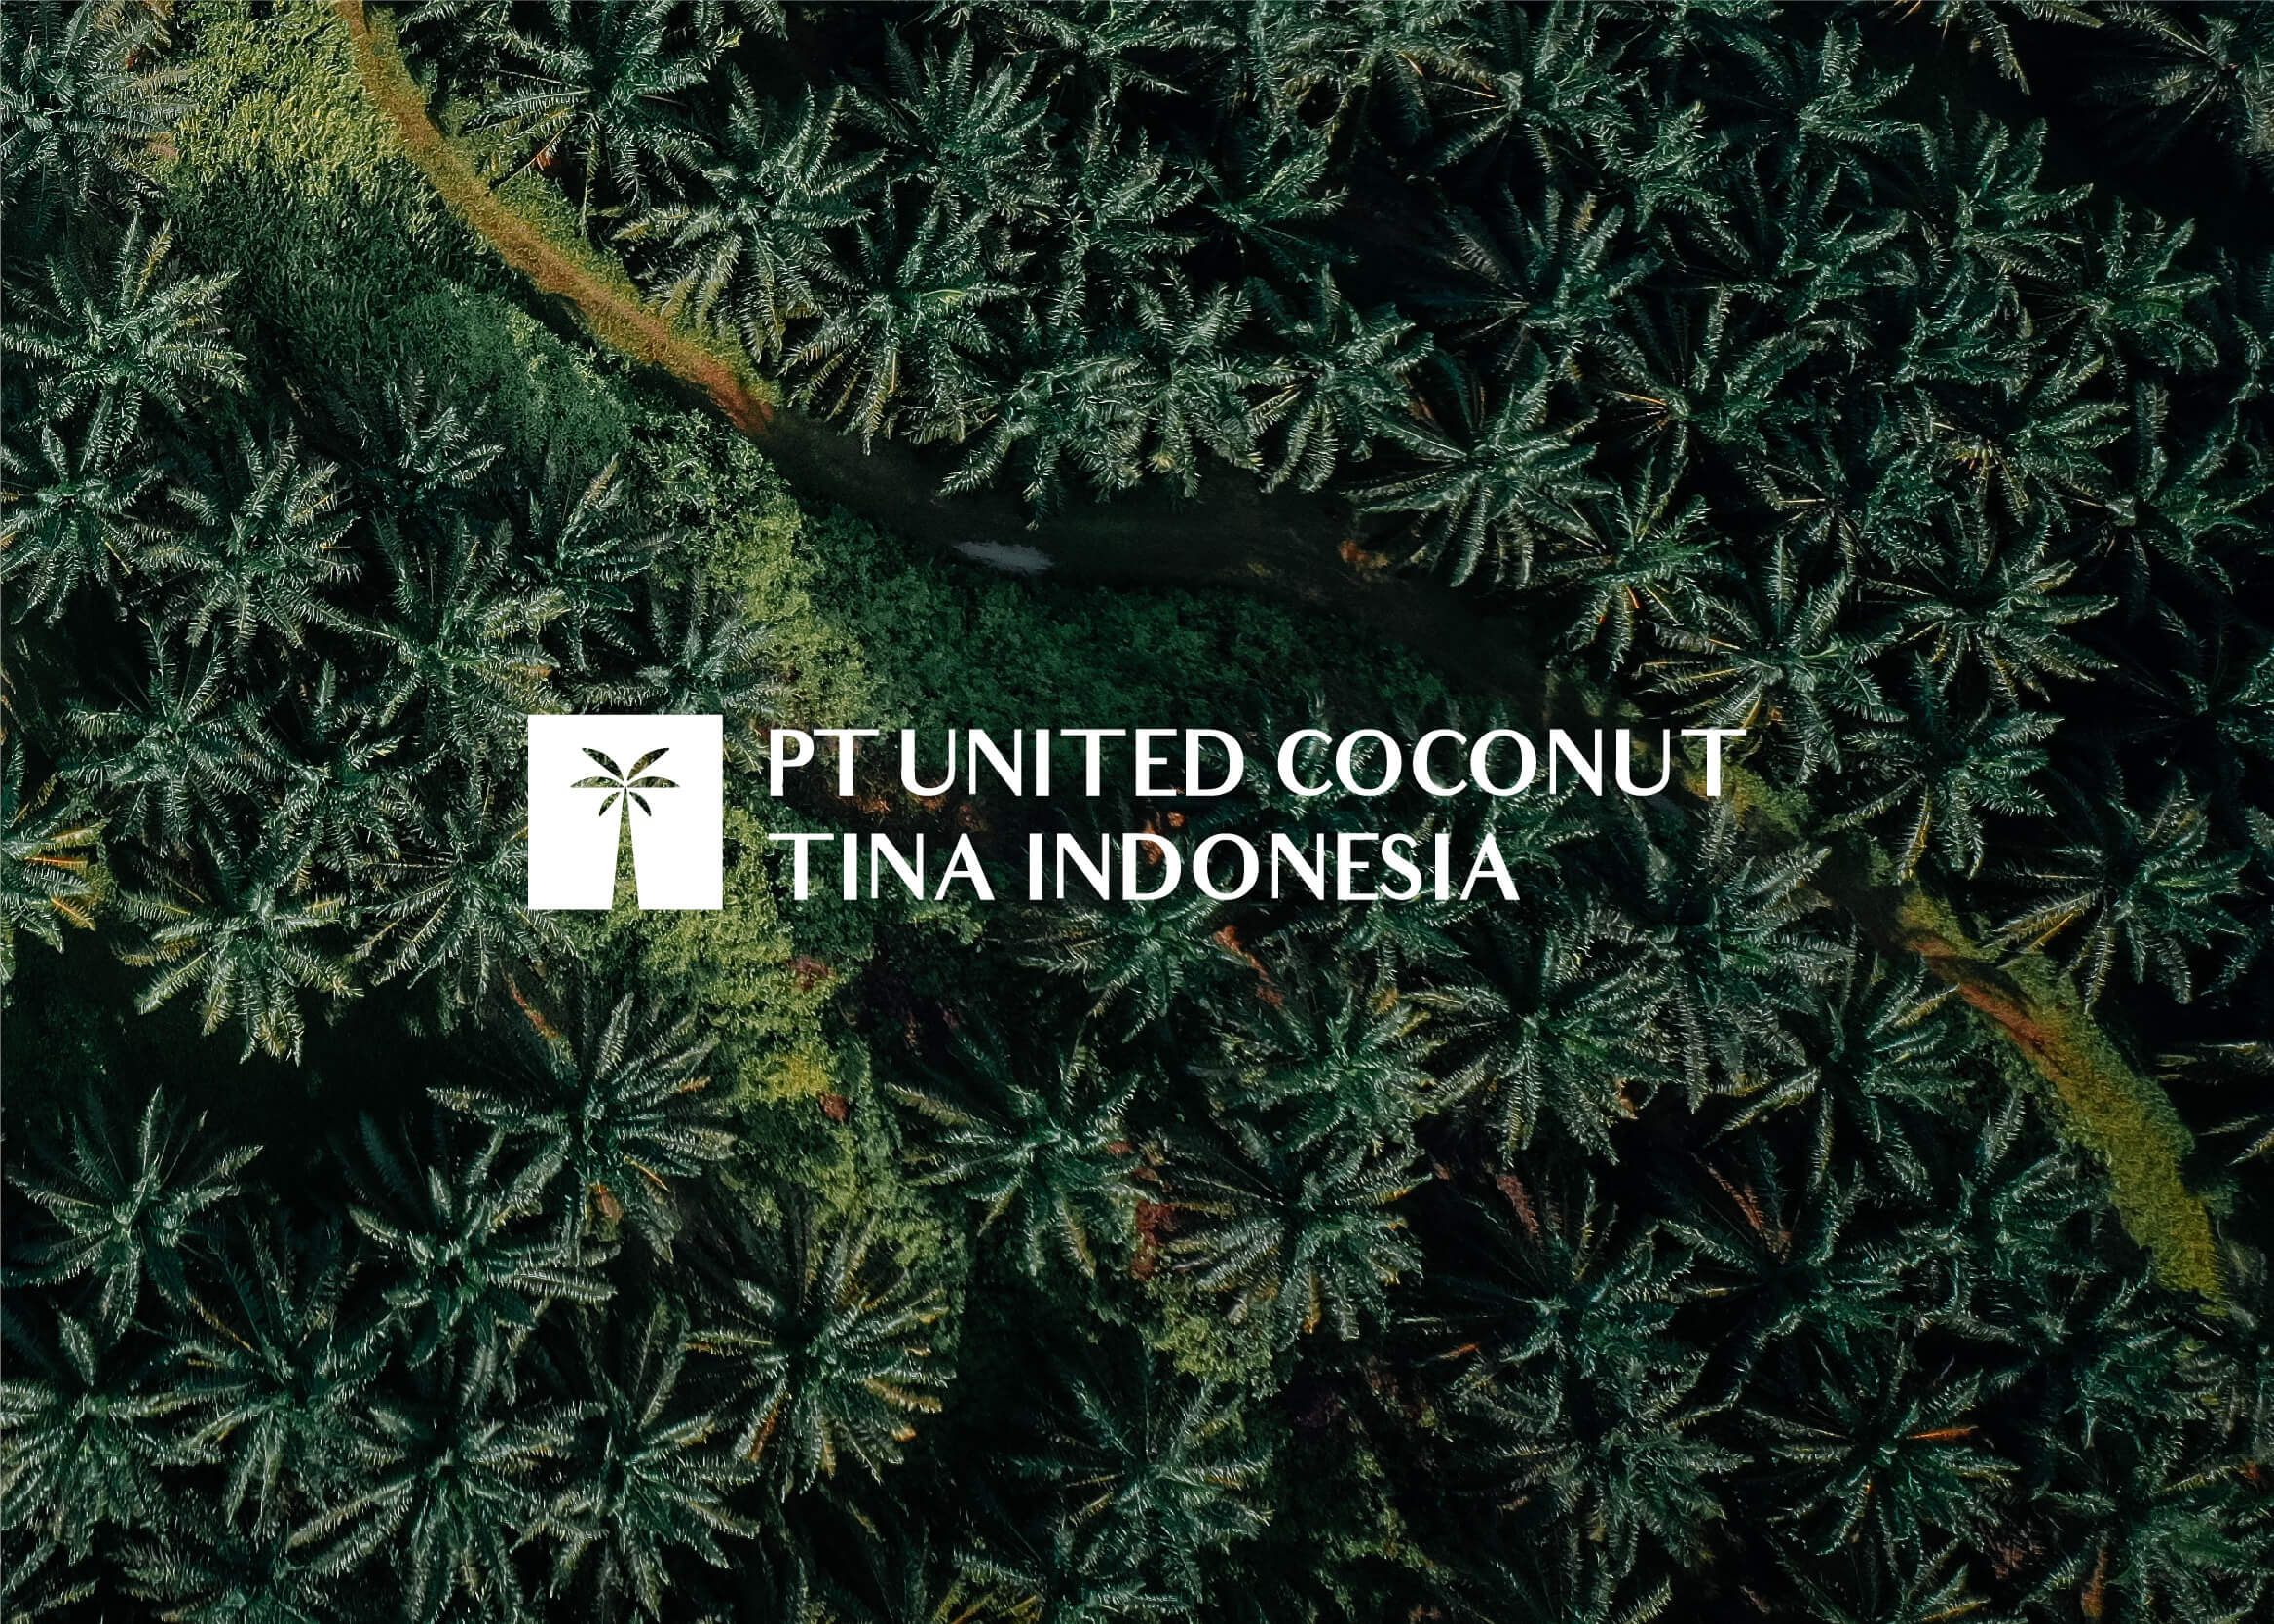 PT. United Coconut Tina